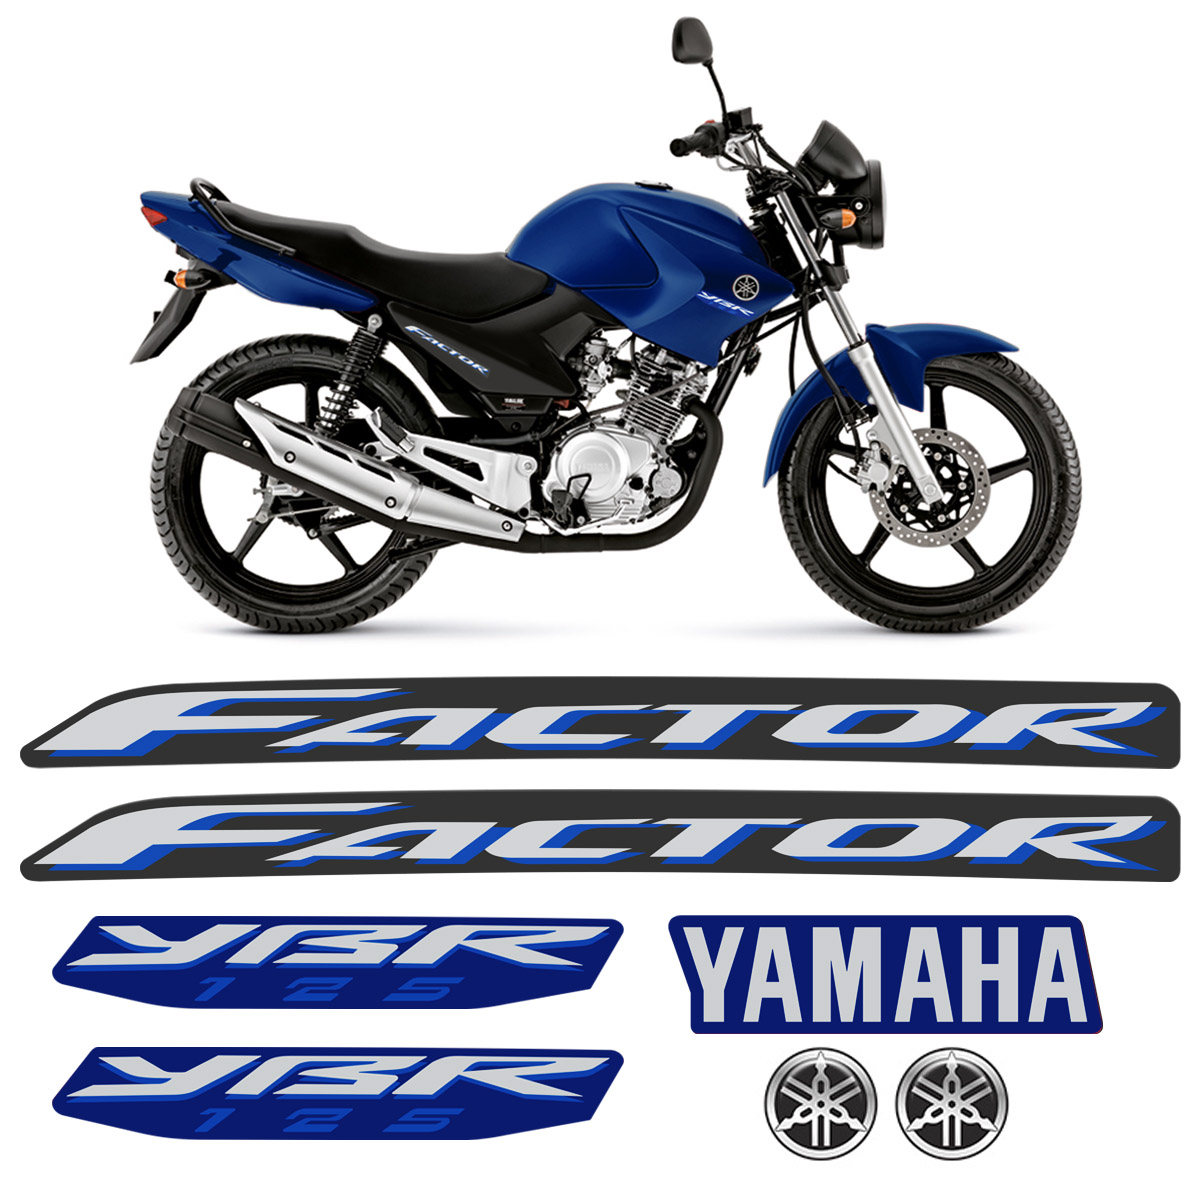 Kit Adesivos Yamaha Ybr 125 Factor 2009 Moto Azul + Emblemas